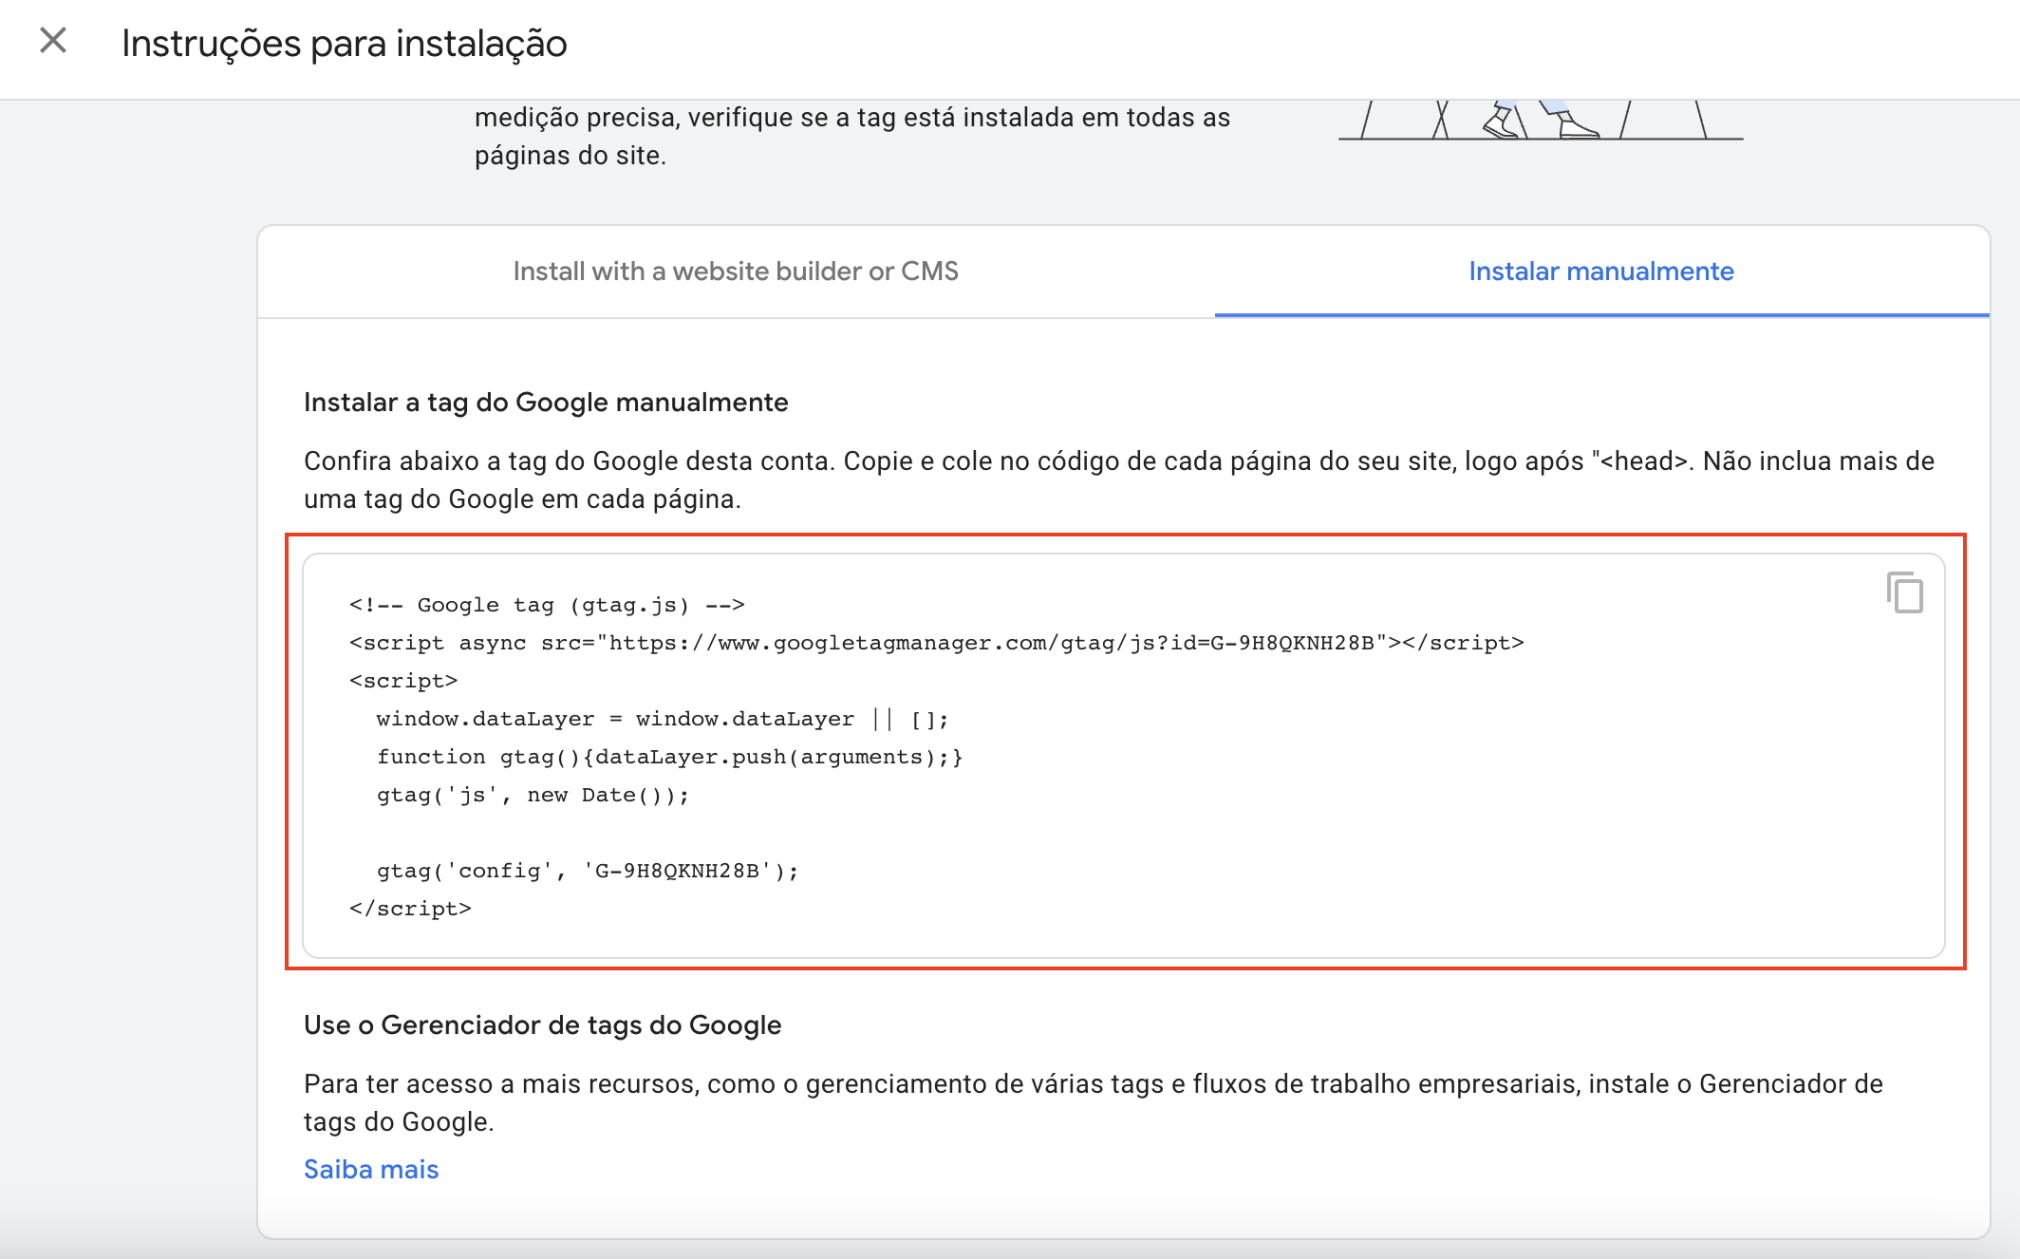 instruções do google para instalar ga4 no cms